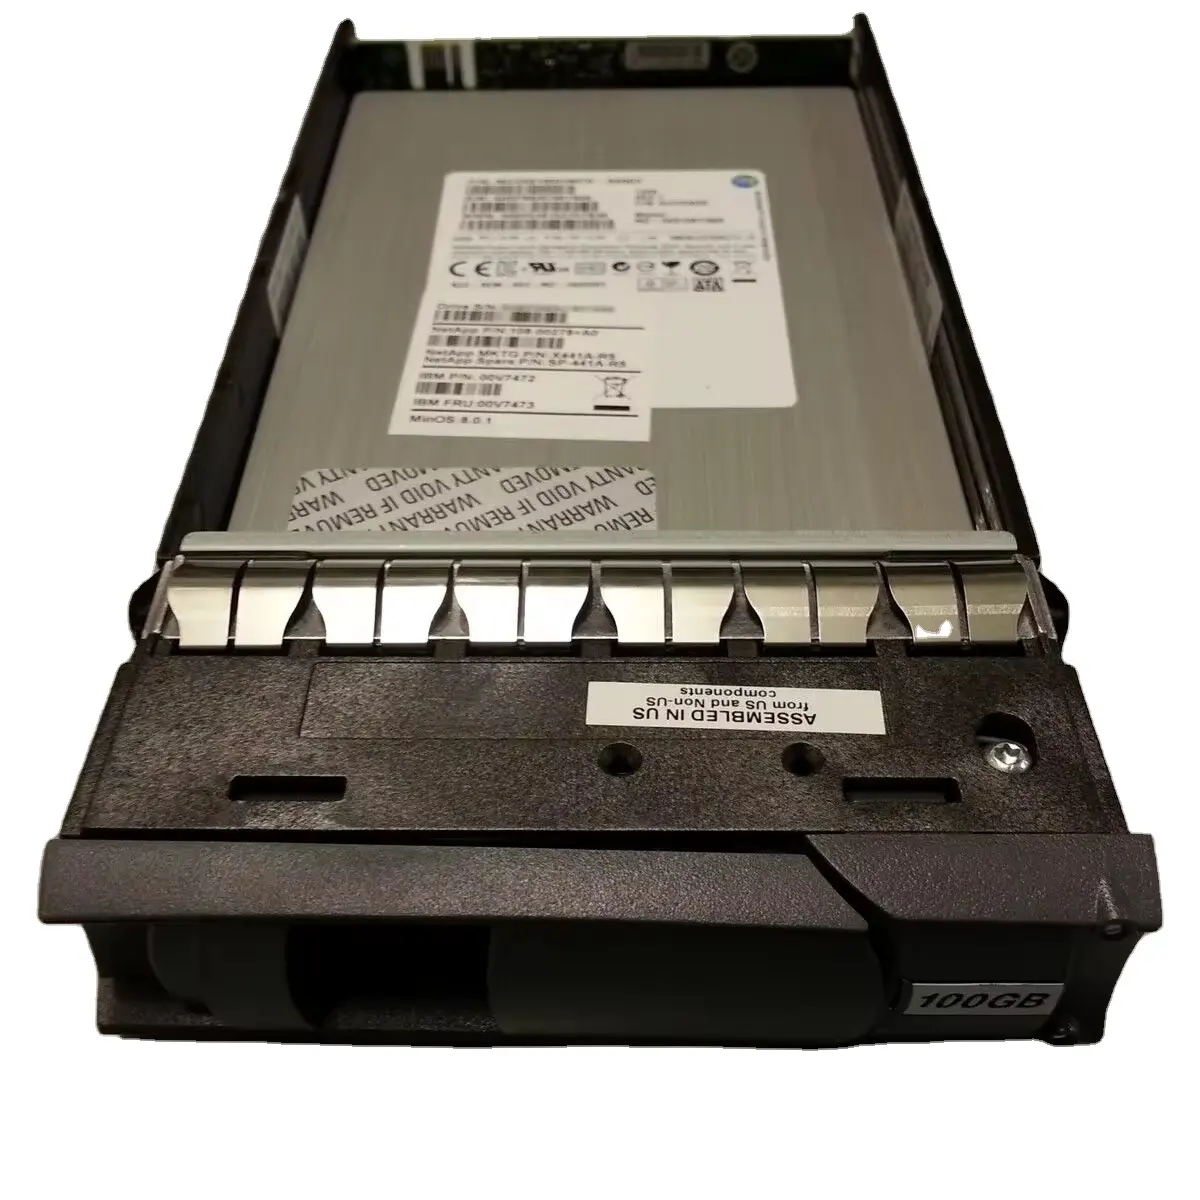 NETAPP X441A-R5 100GB SAS 6G LFF SSD yüksek performanslı sabit disk